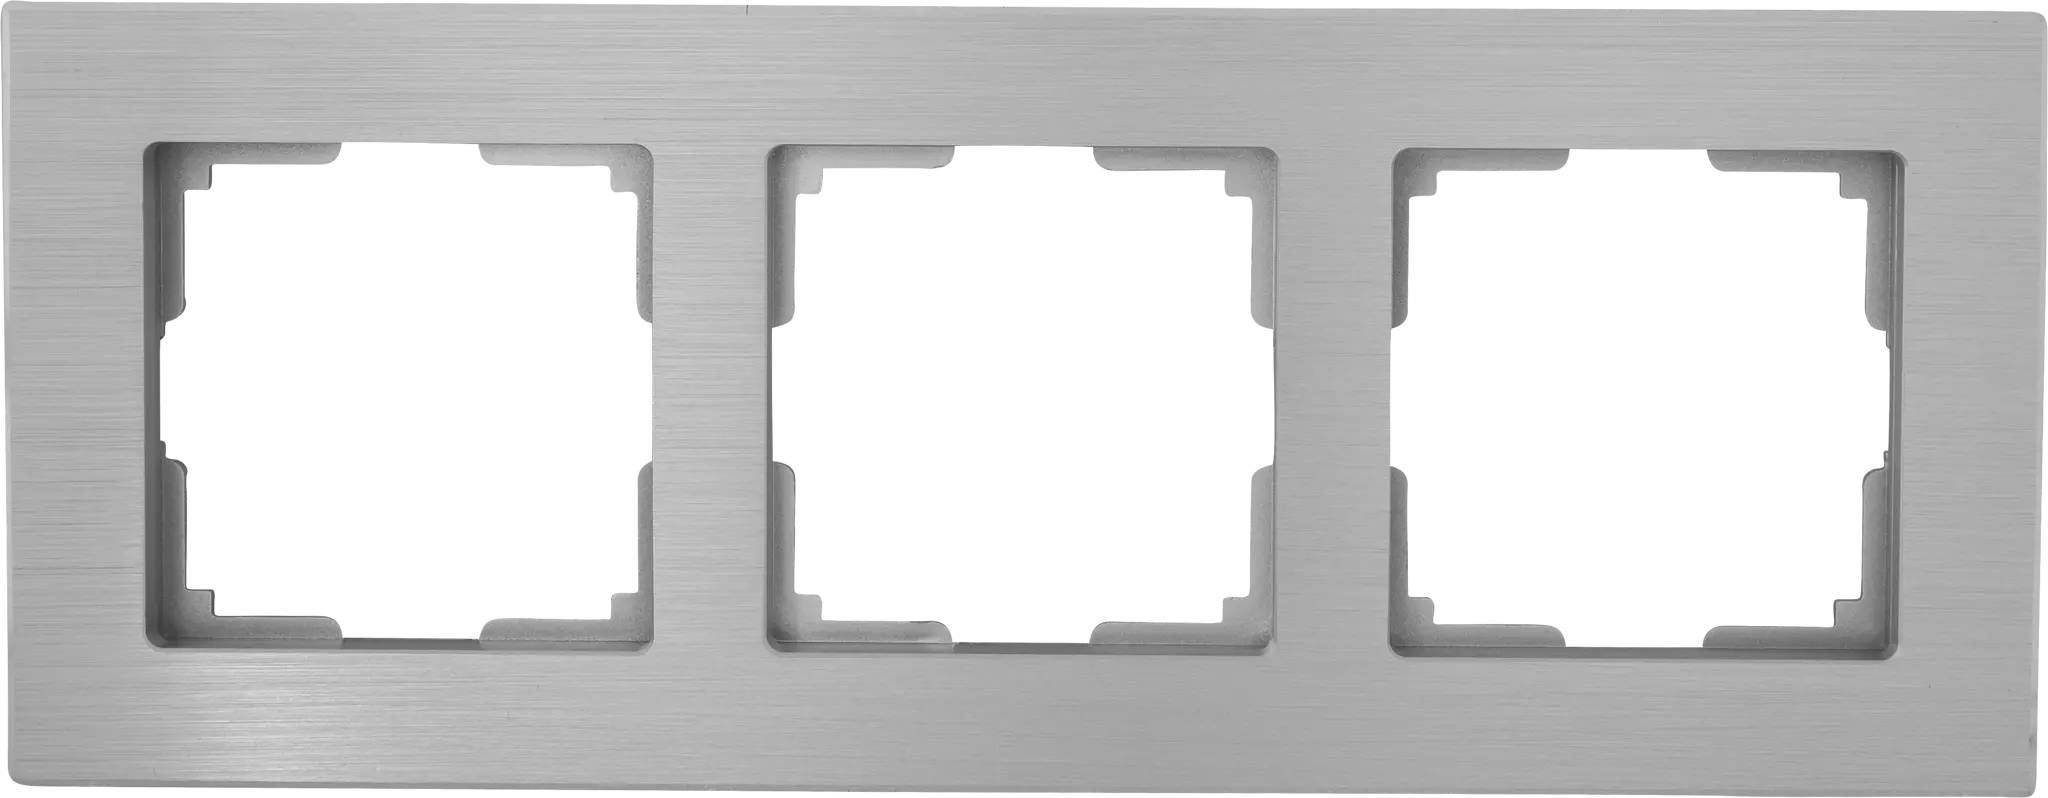 Рамка для розеток и выключателей Werkel Aluminium 3 поста, металл, цвет алюминий